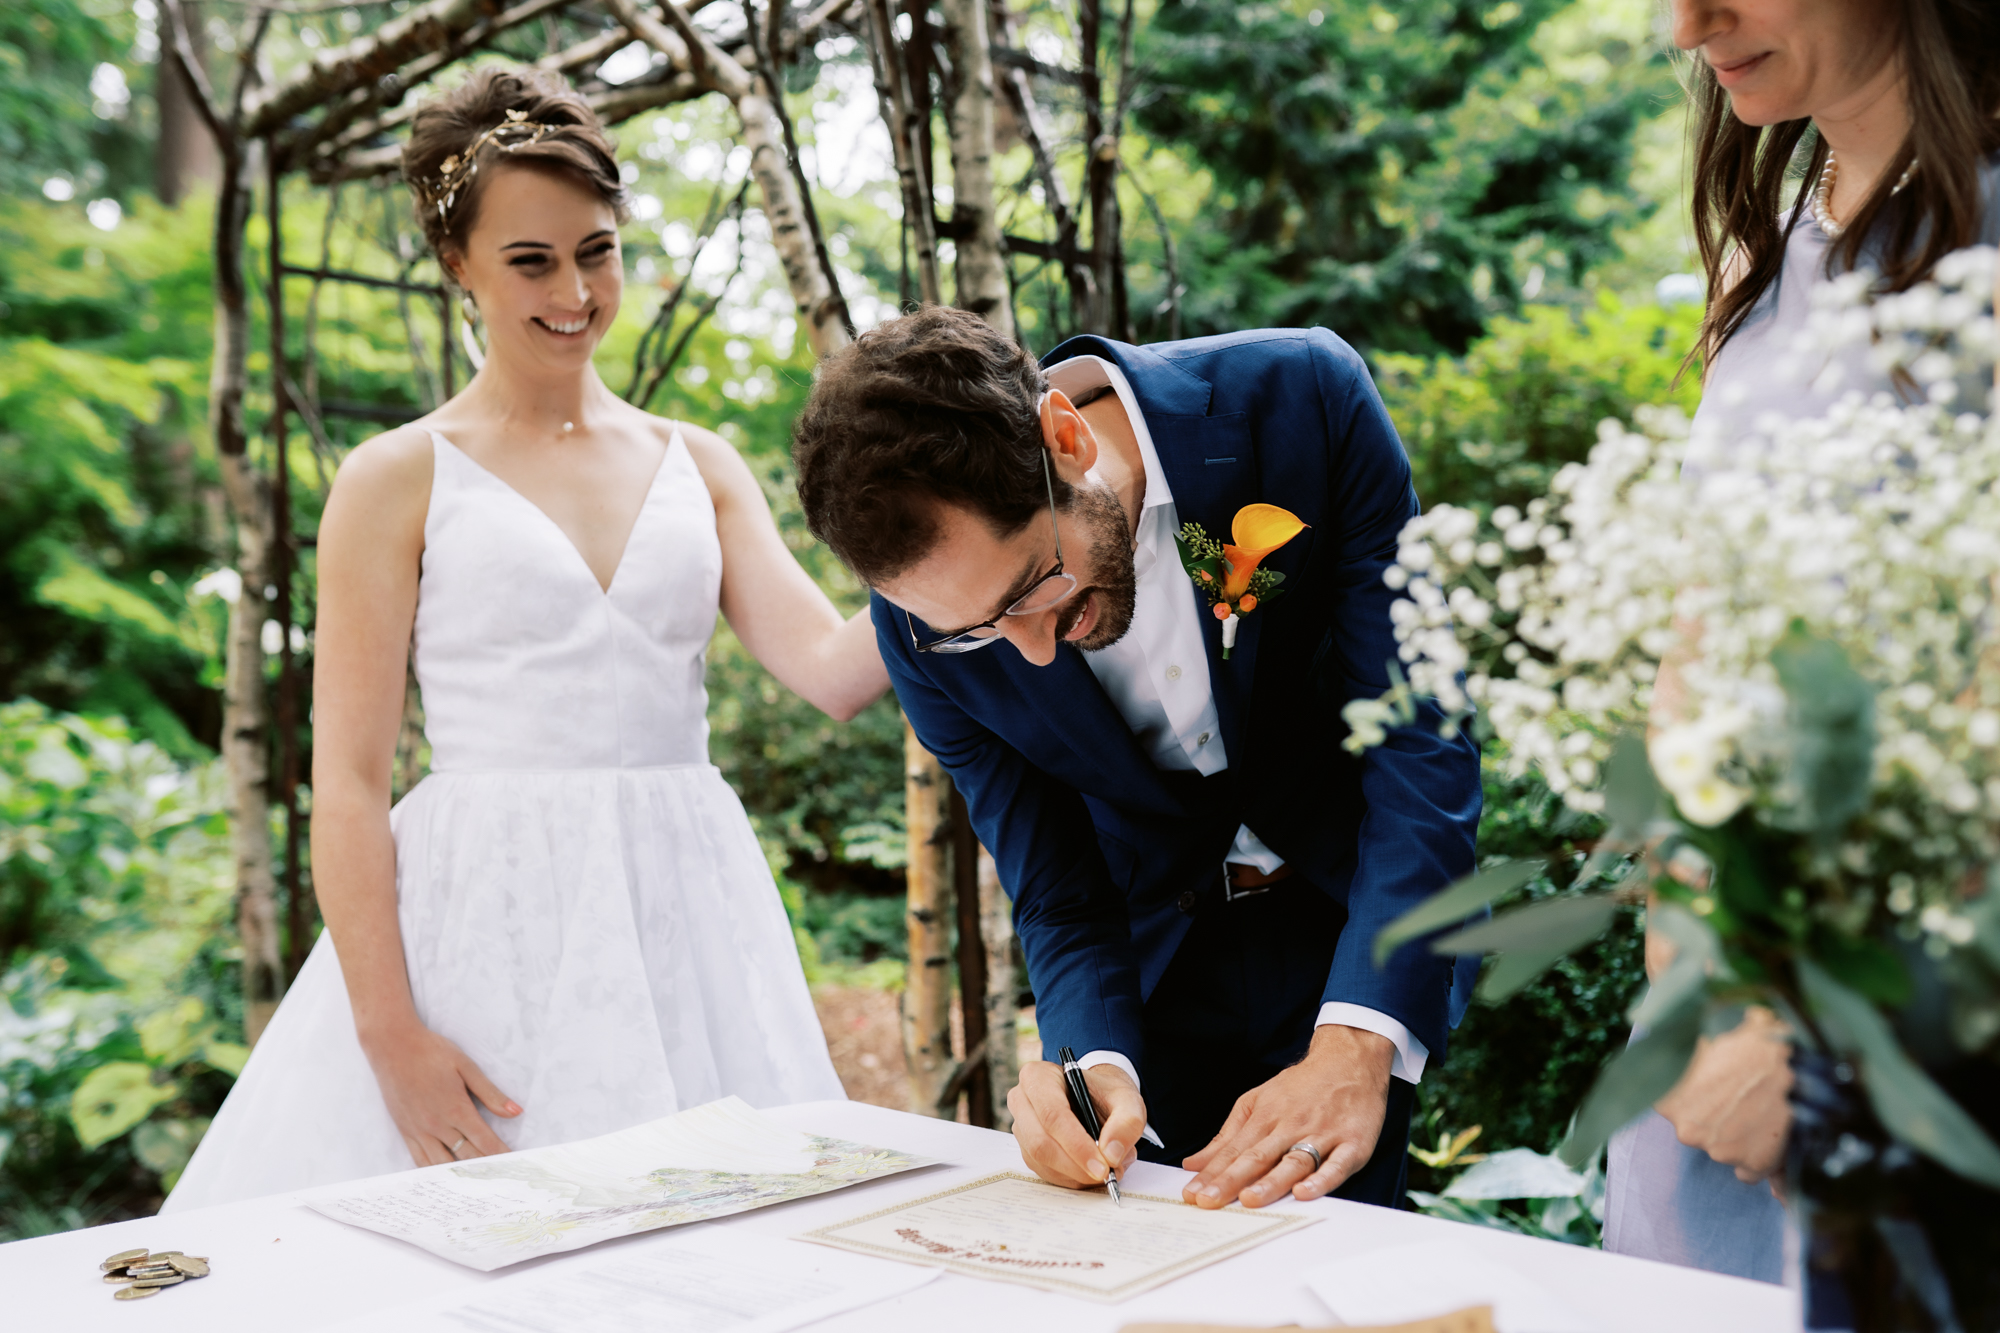 Dunn Garden Weddings: Amy and Scott sign documents